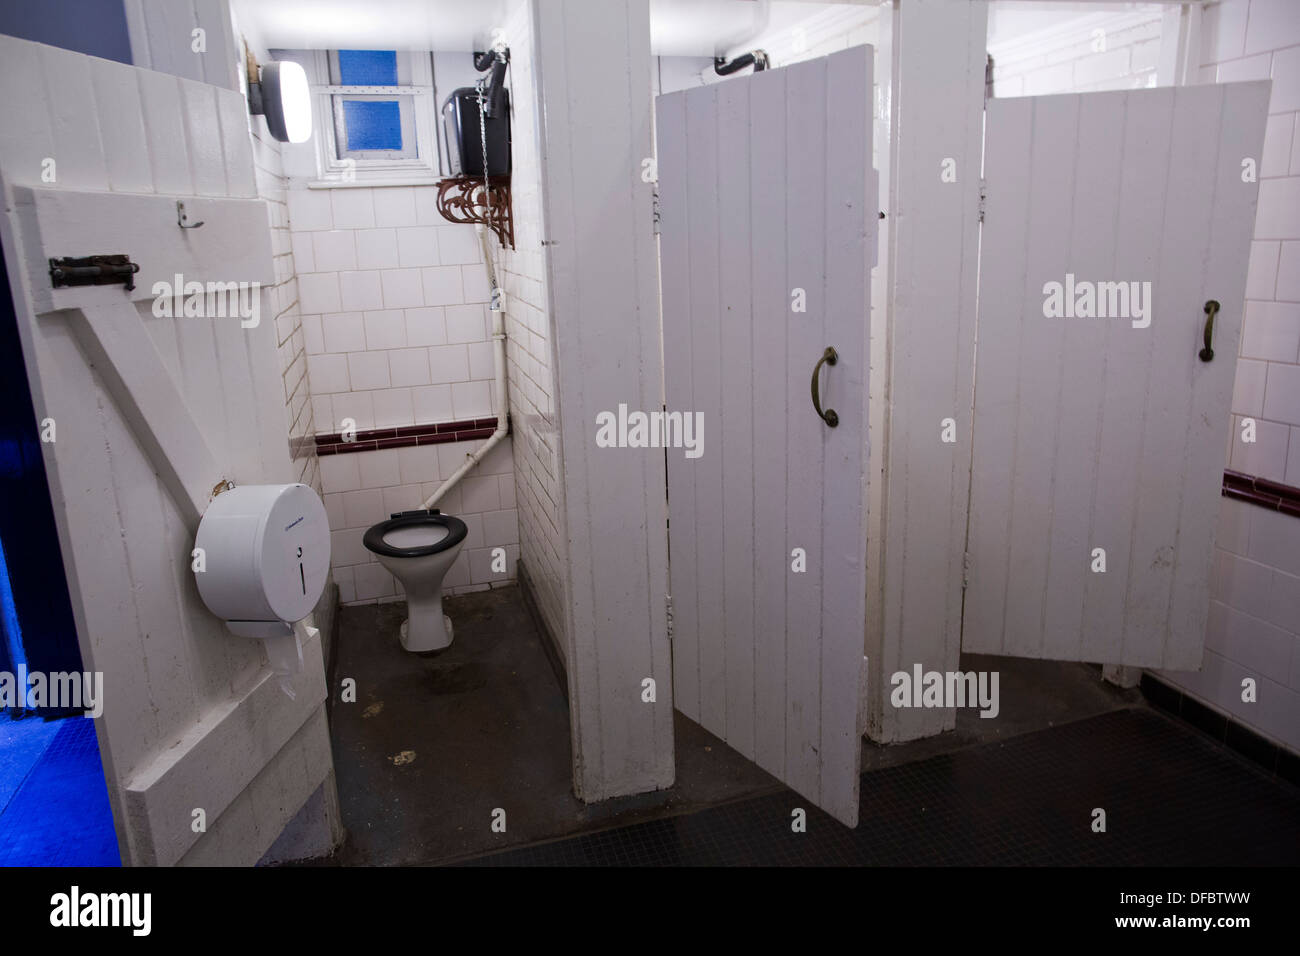 UK, London : Public toilets on Hampstead Heath in London on August 28, 2013. Stock Photo